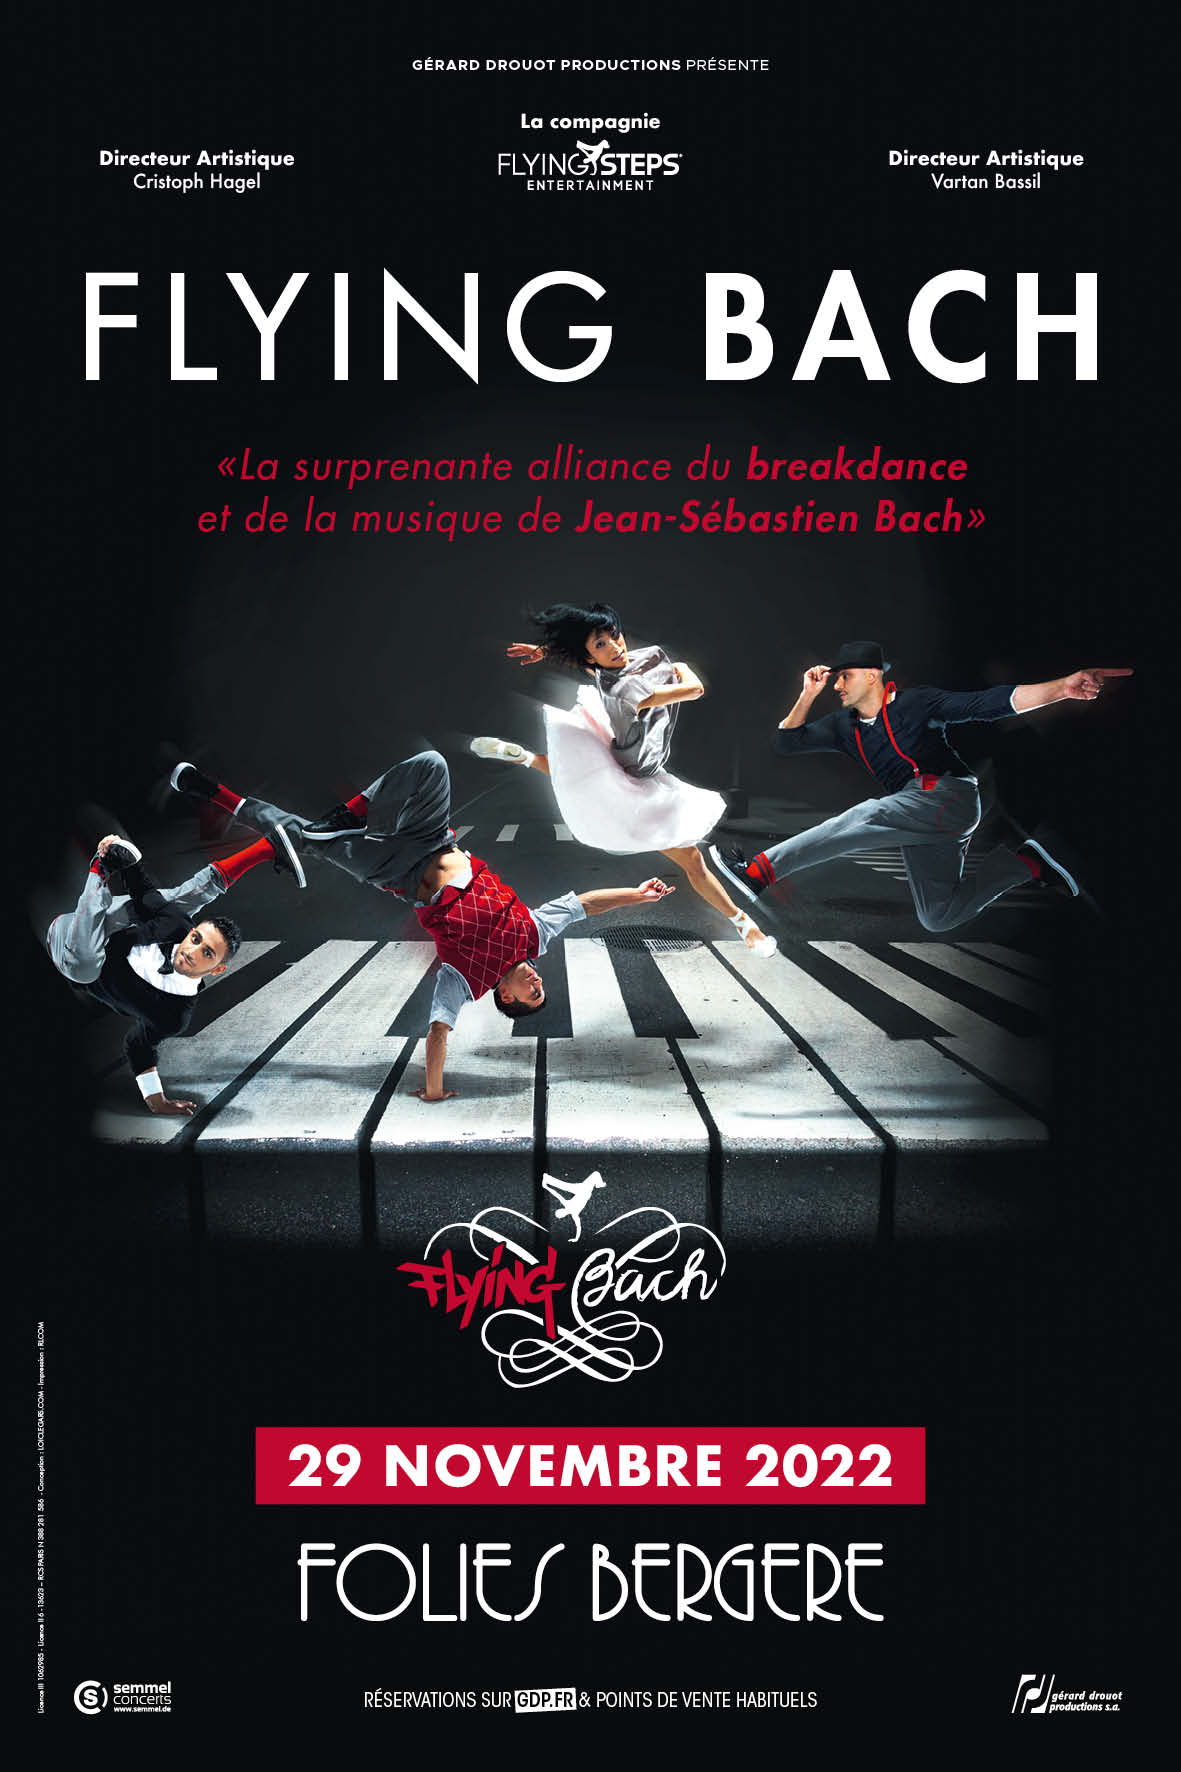 Flying Bach s'annonce le 29/11/2022 à Paris aux Folies Bergère